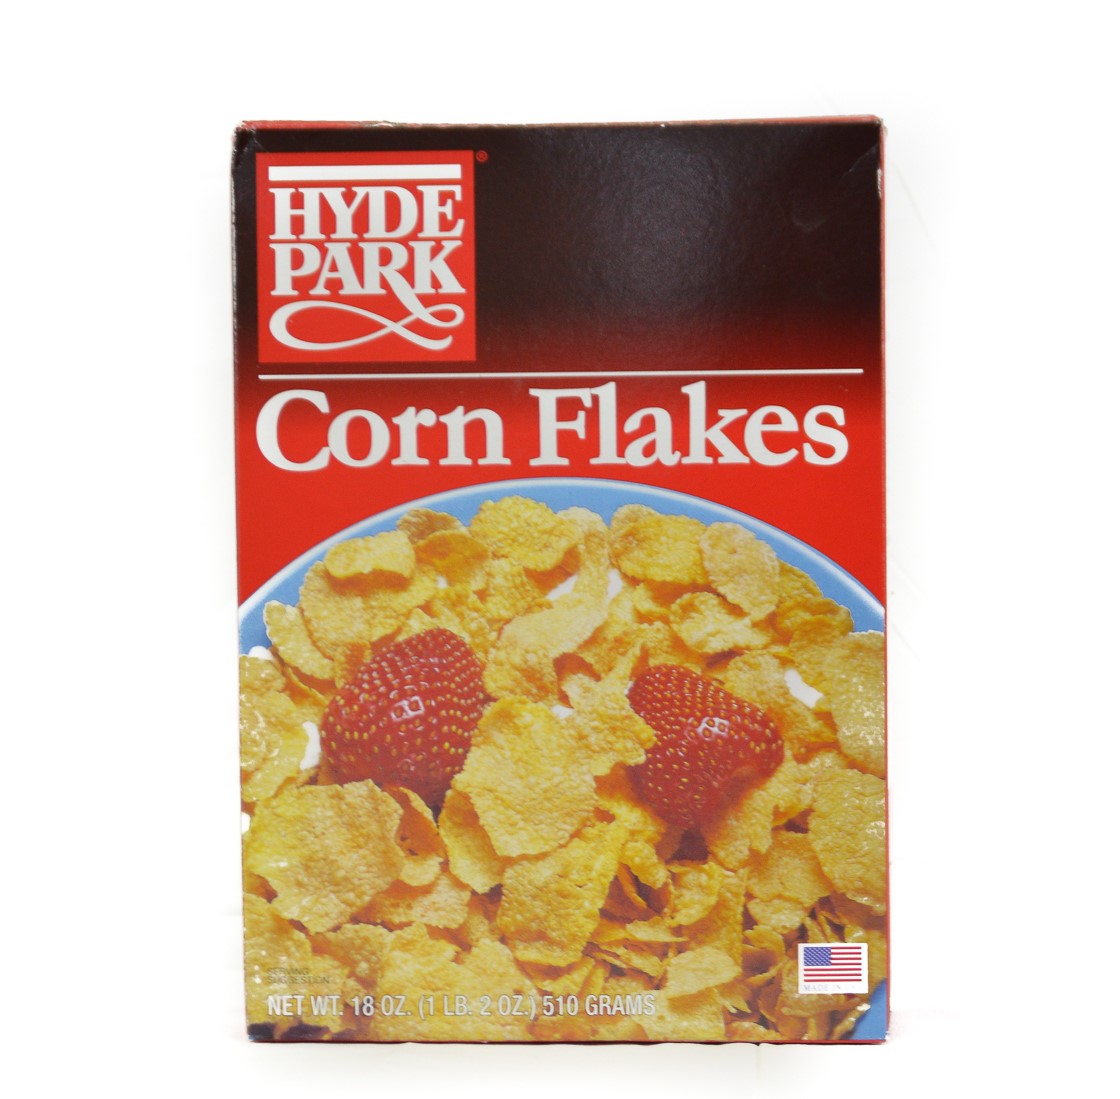 Corn Flakes Hyde Park (12 Boxes)